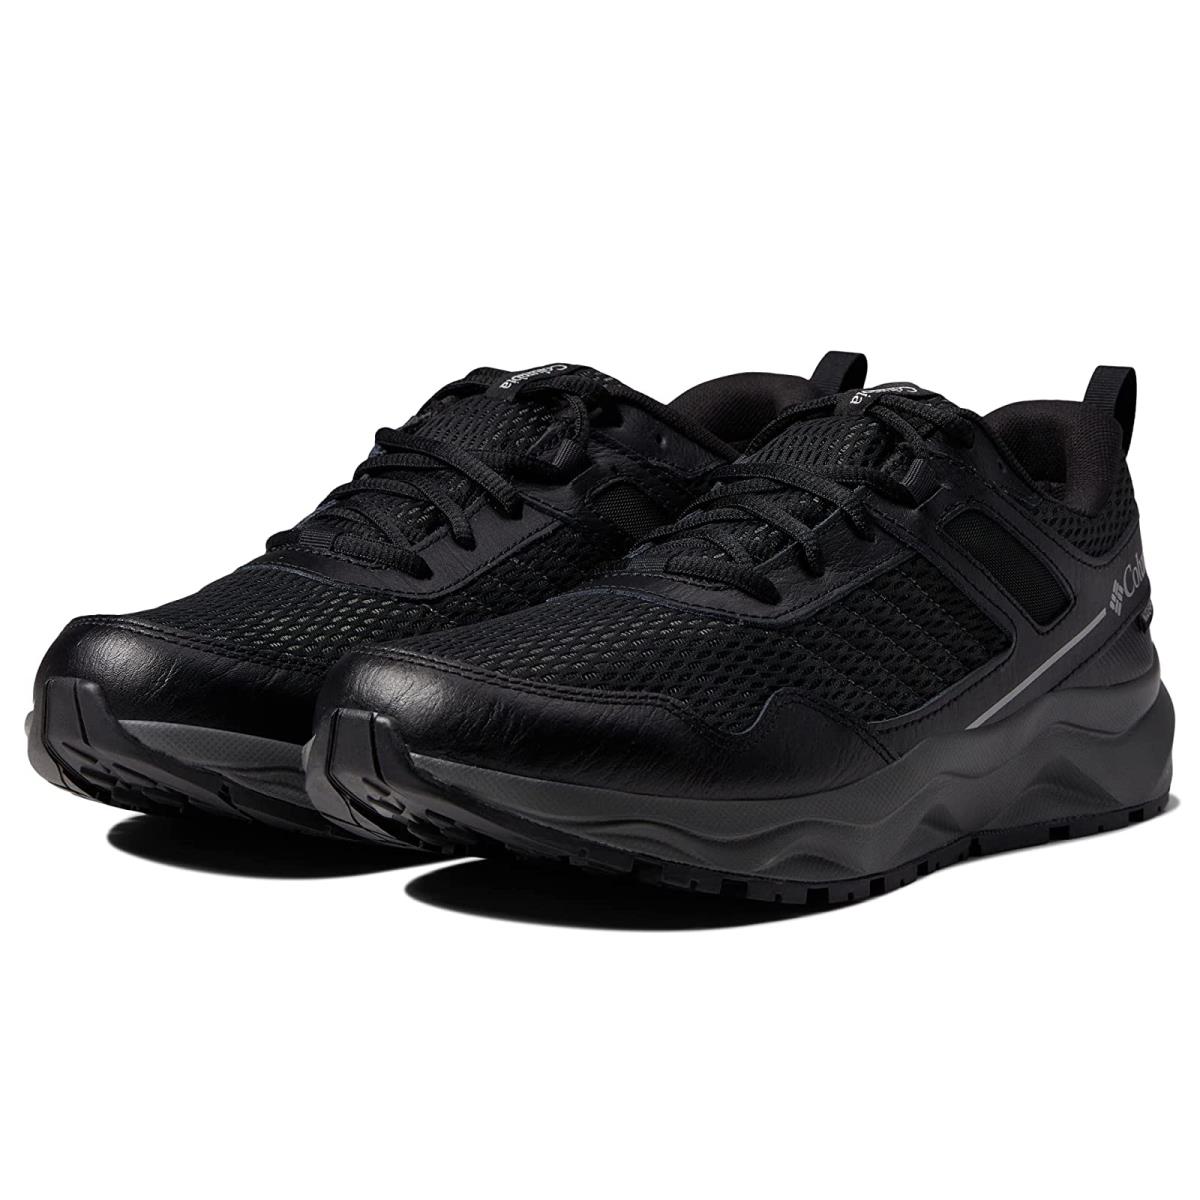 Man`s Sneakers Athletic Shoes Columbia Plateau Waterproof Black/Steam